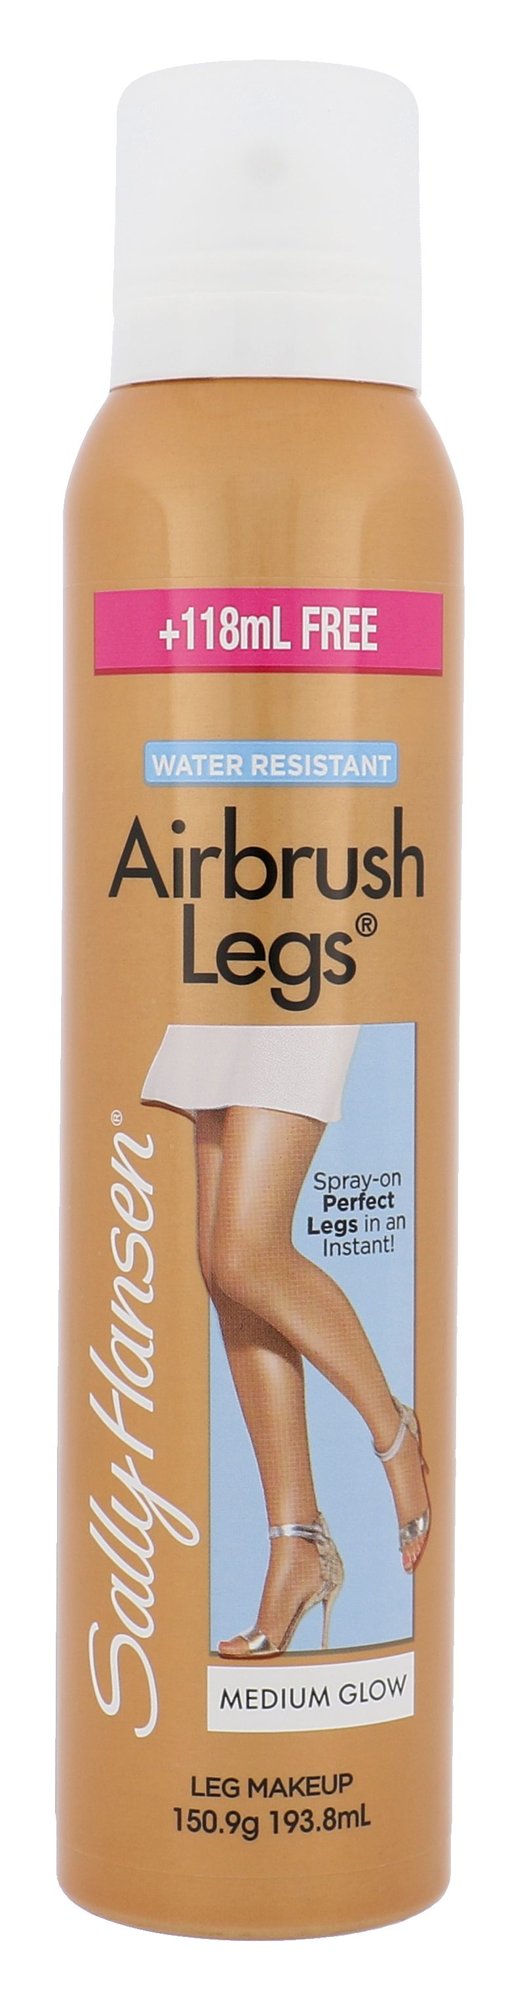 Sally Hansen Airbrush Legs Makeup Spray savaiminio įdegio kremas